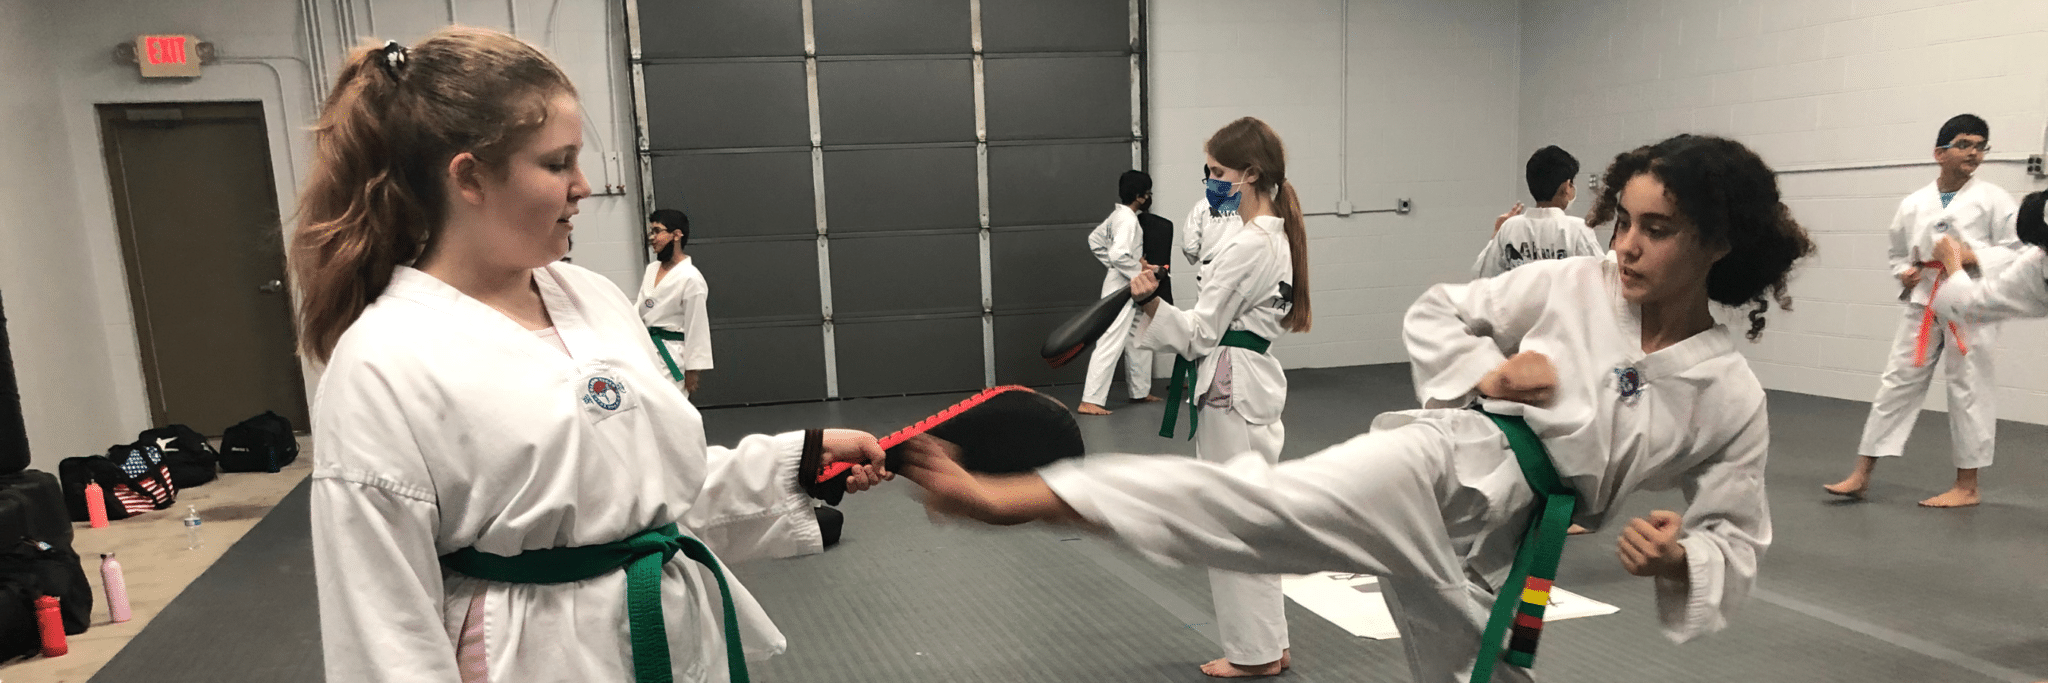 Akula Taekwondo About Akula Taekwondo